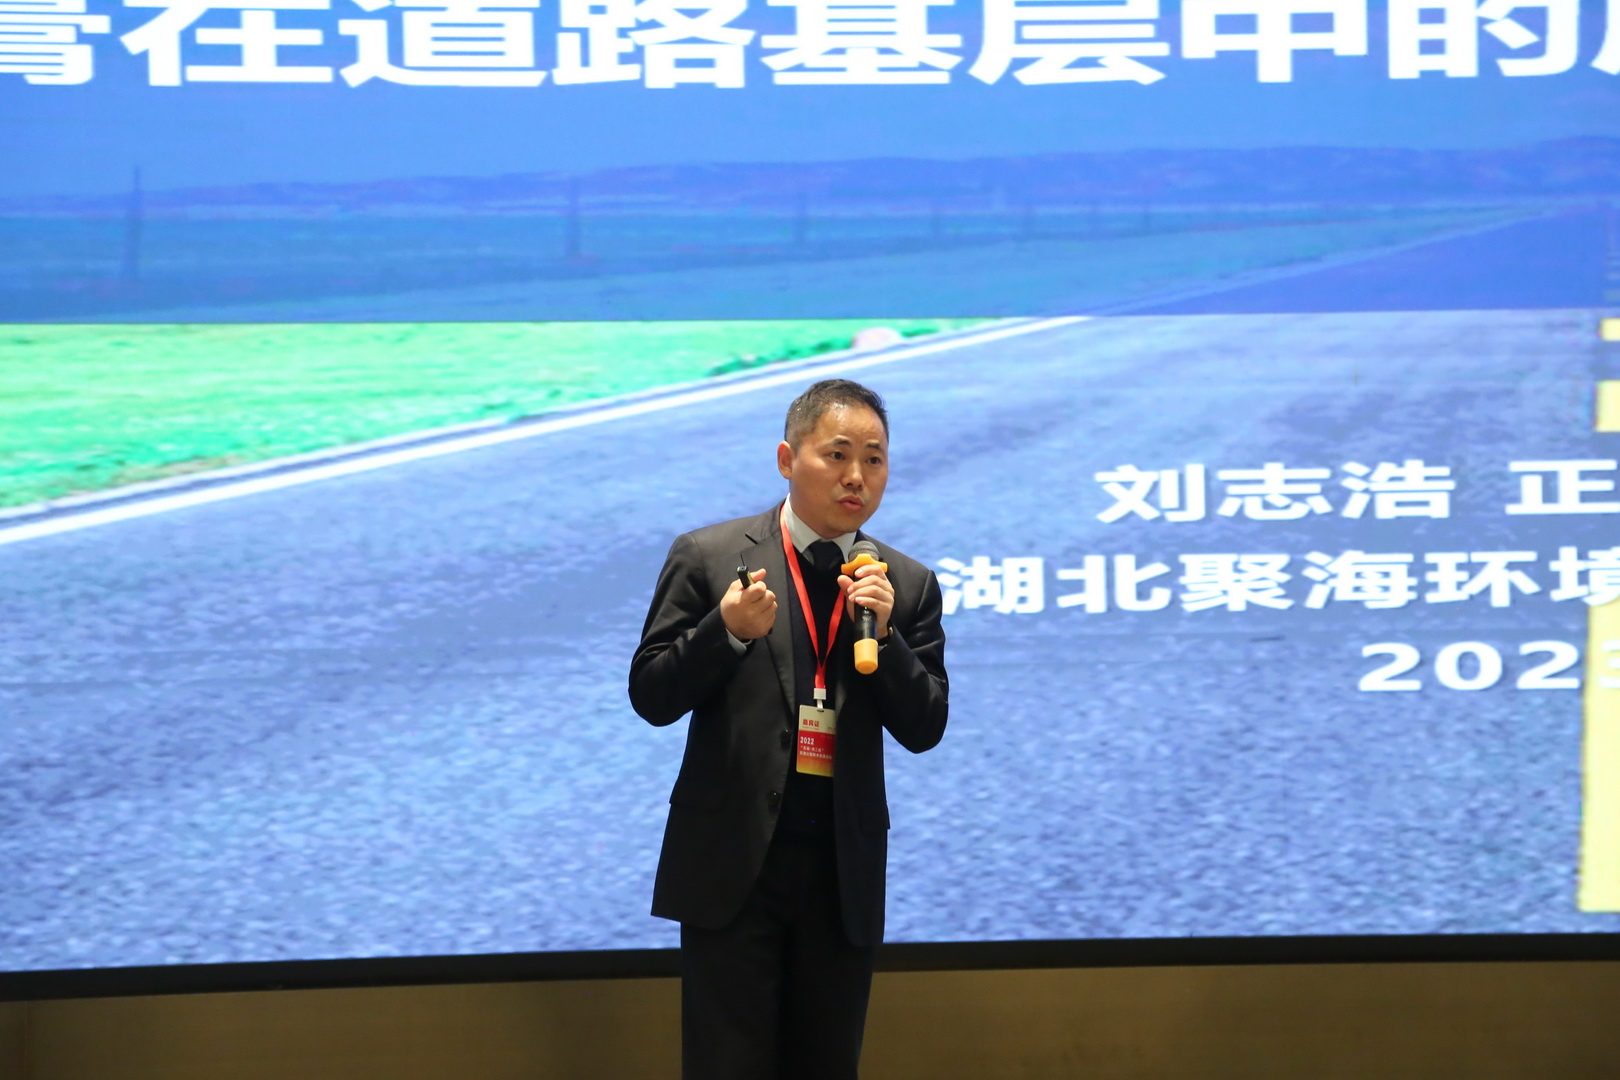 刘志浩董事长作《磷建筑石膏在道路基层中的应用方案及其综合性能研究》的演讲